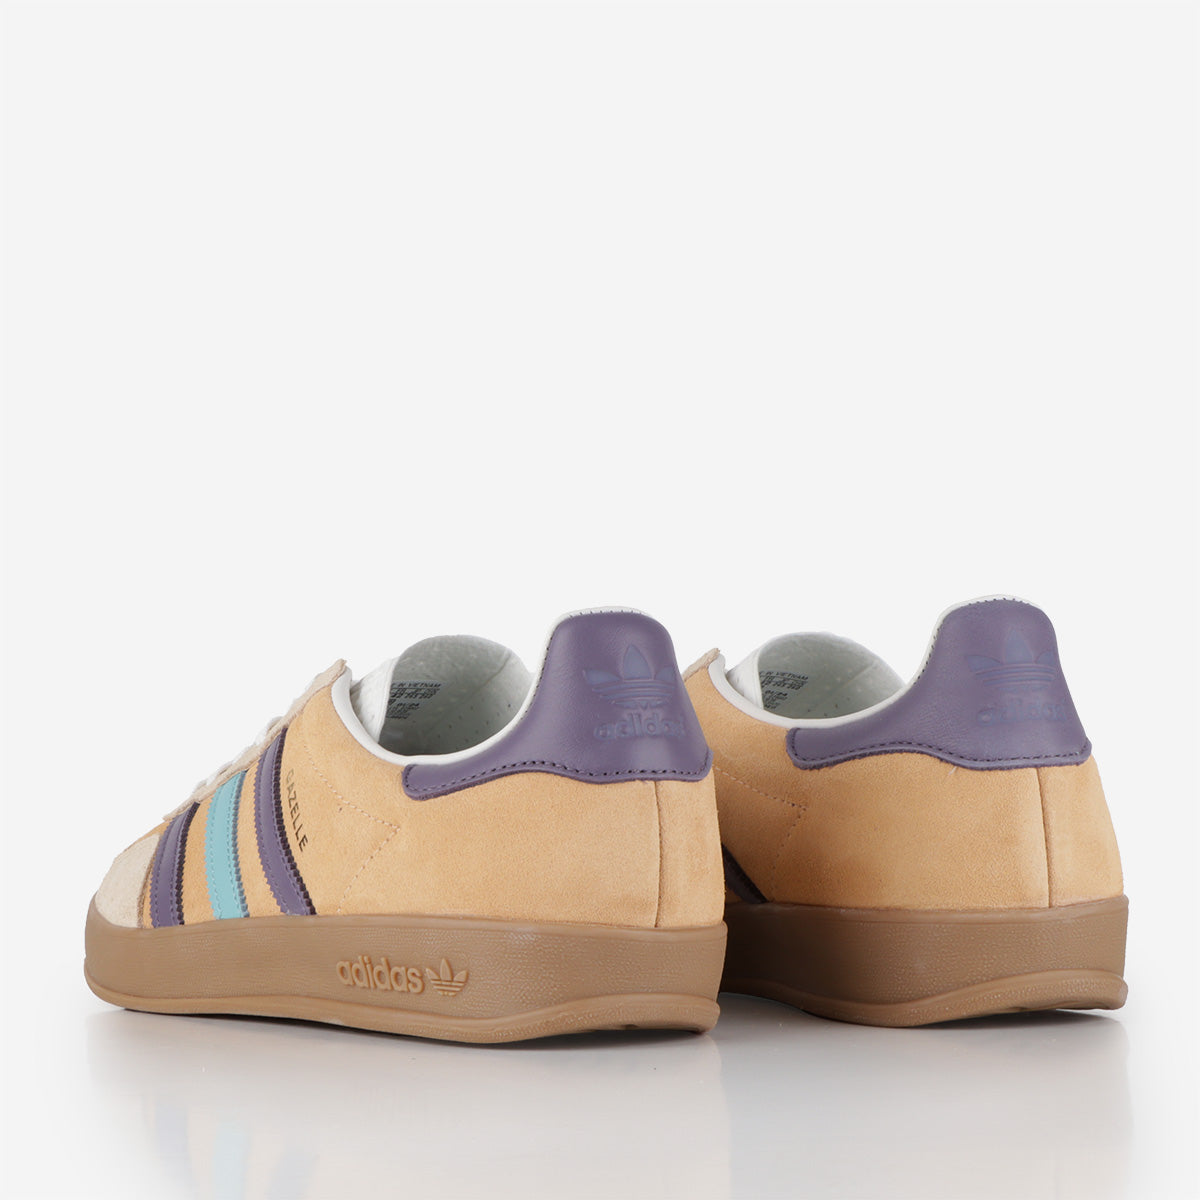 Adidas Originals Gazelle Indoor Shoes, Glow Orange Shadow Violet Off White, Detail Shot 3